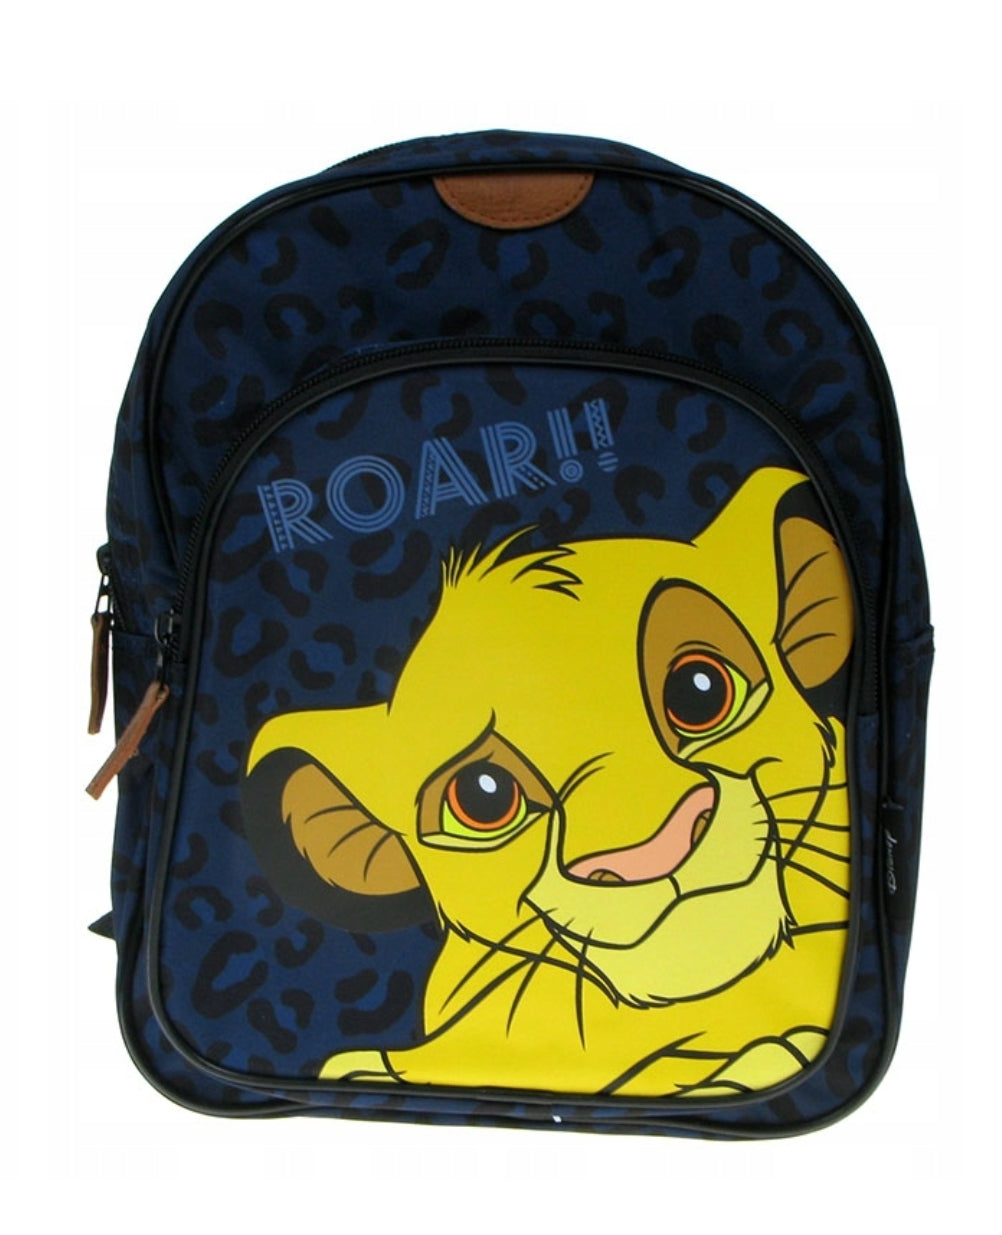 Lion King Backpack